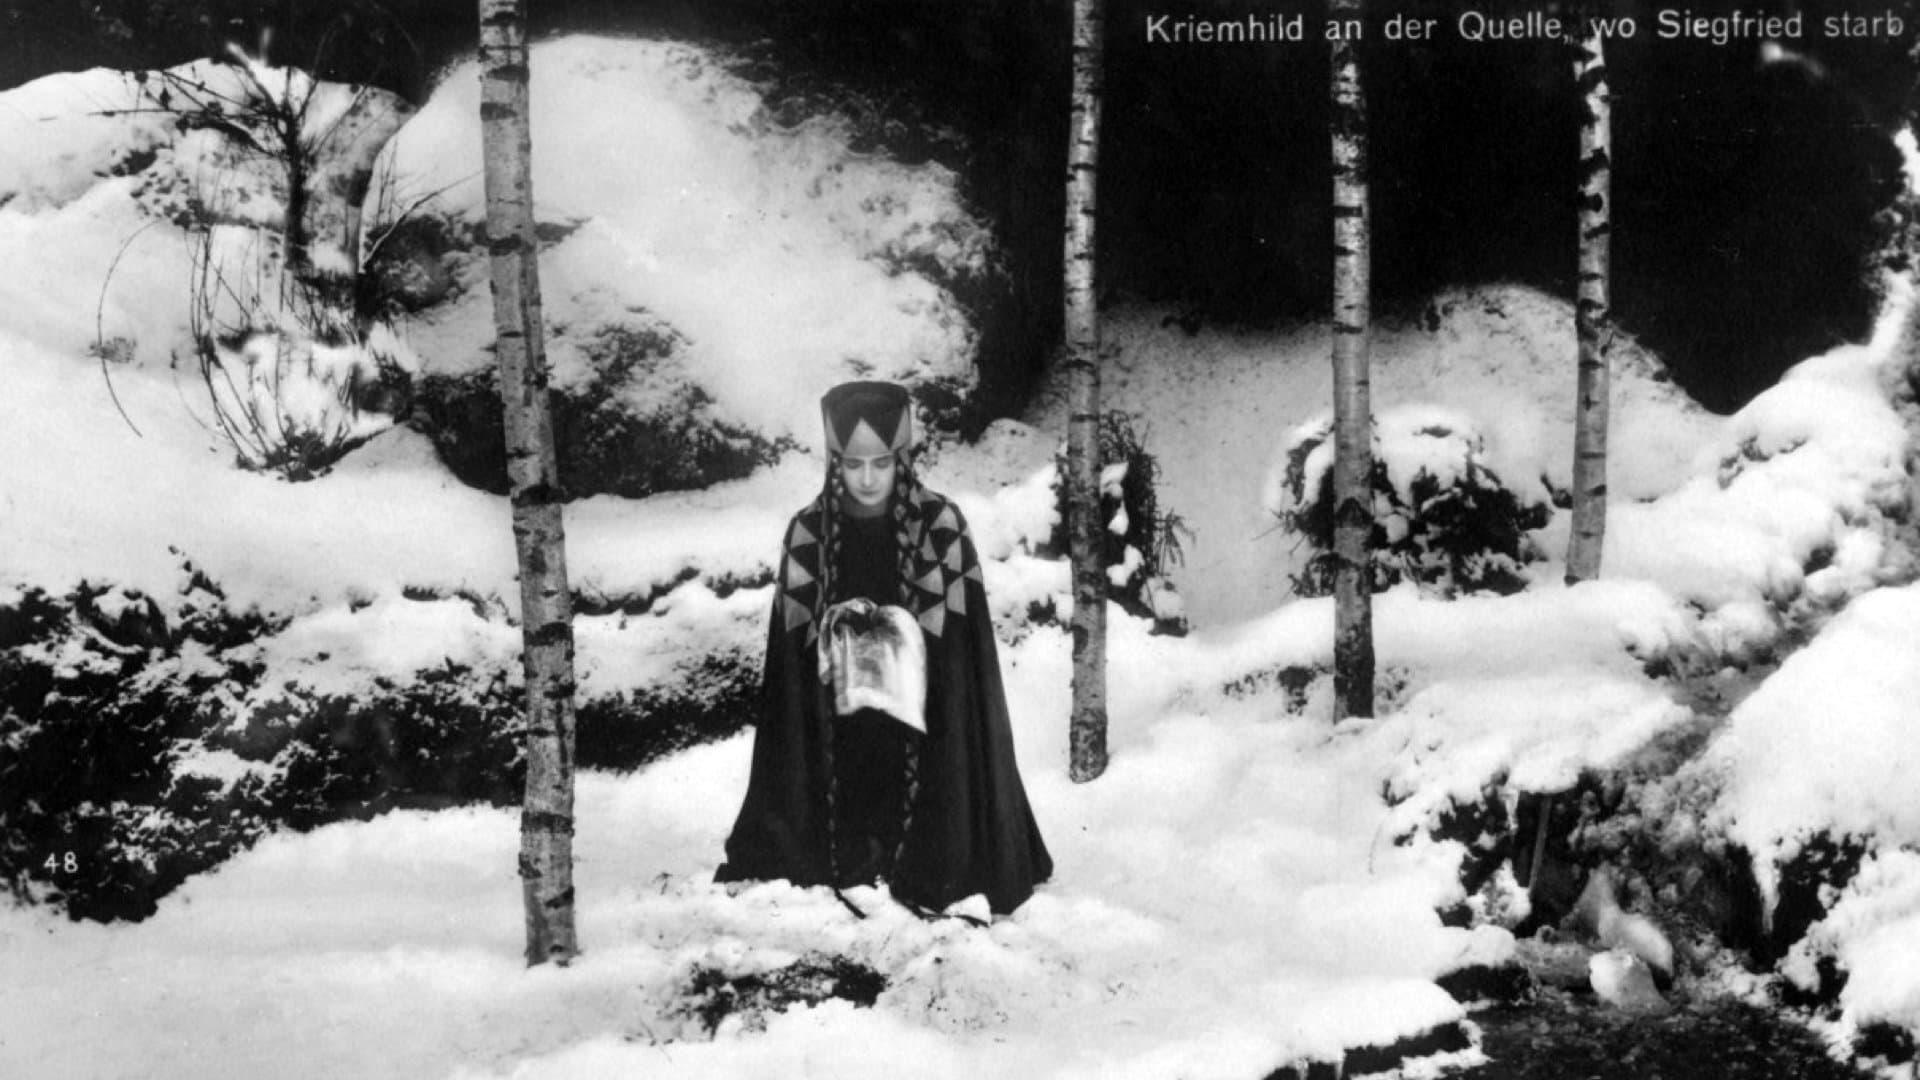 Die Nibelungen: Kriemhild's Revenge backdrop